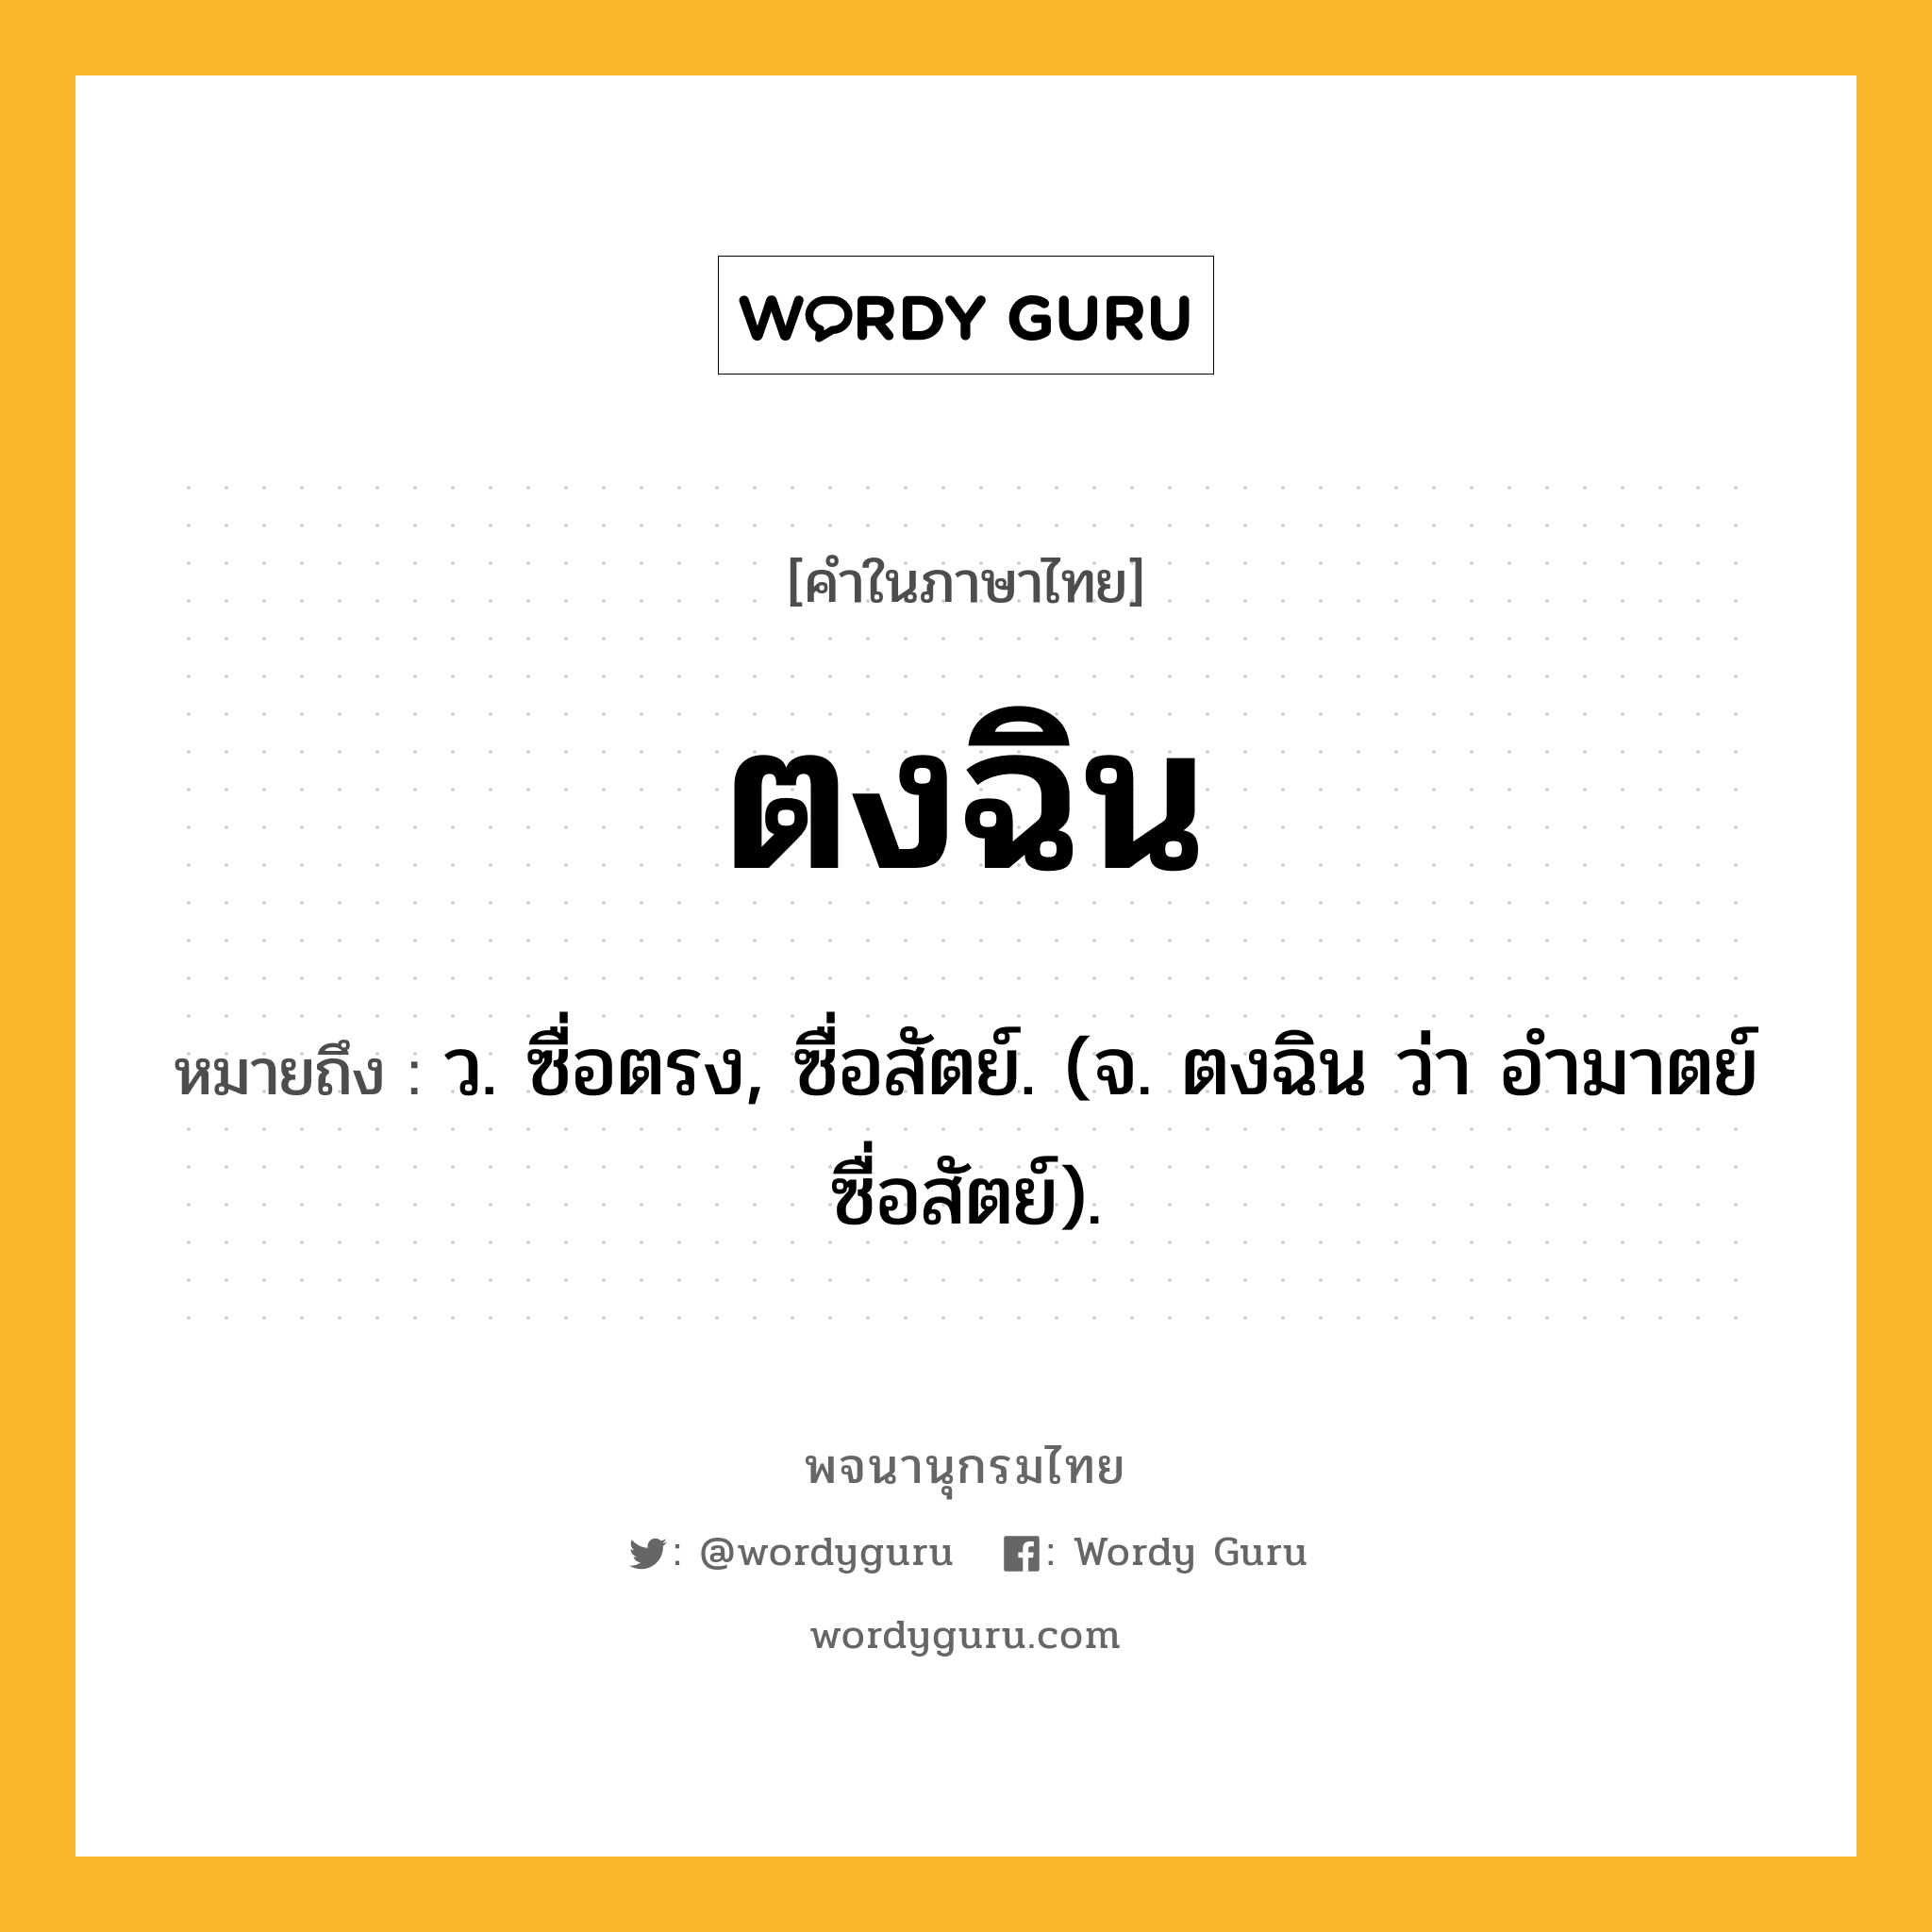 ตงฉิน หมายถึงอะไร?, คำในภาษาไทย ตงฉิน หมายถึง ว. ซื่อตรง, ซื่อสัตย์. (จ. ตงฉิน ว่า อํามาตย์ซื่อสัตย์).